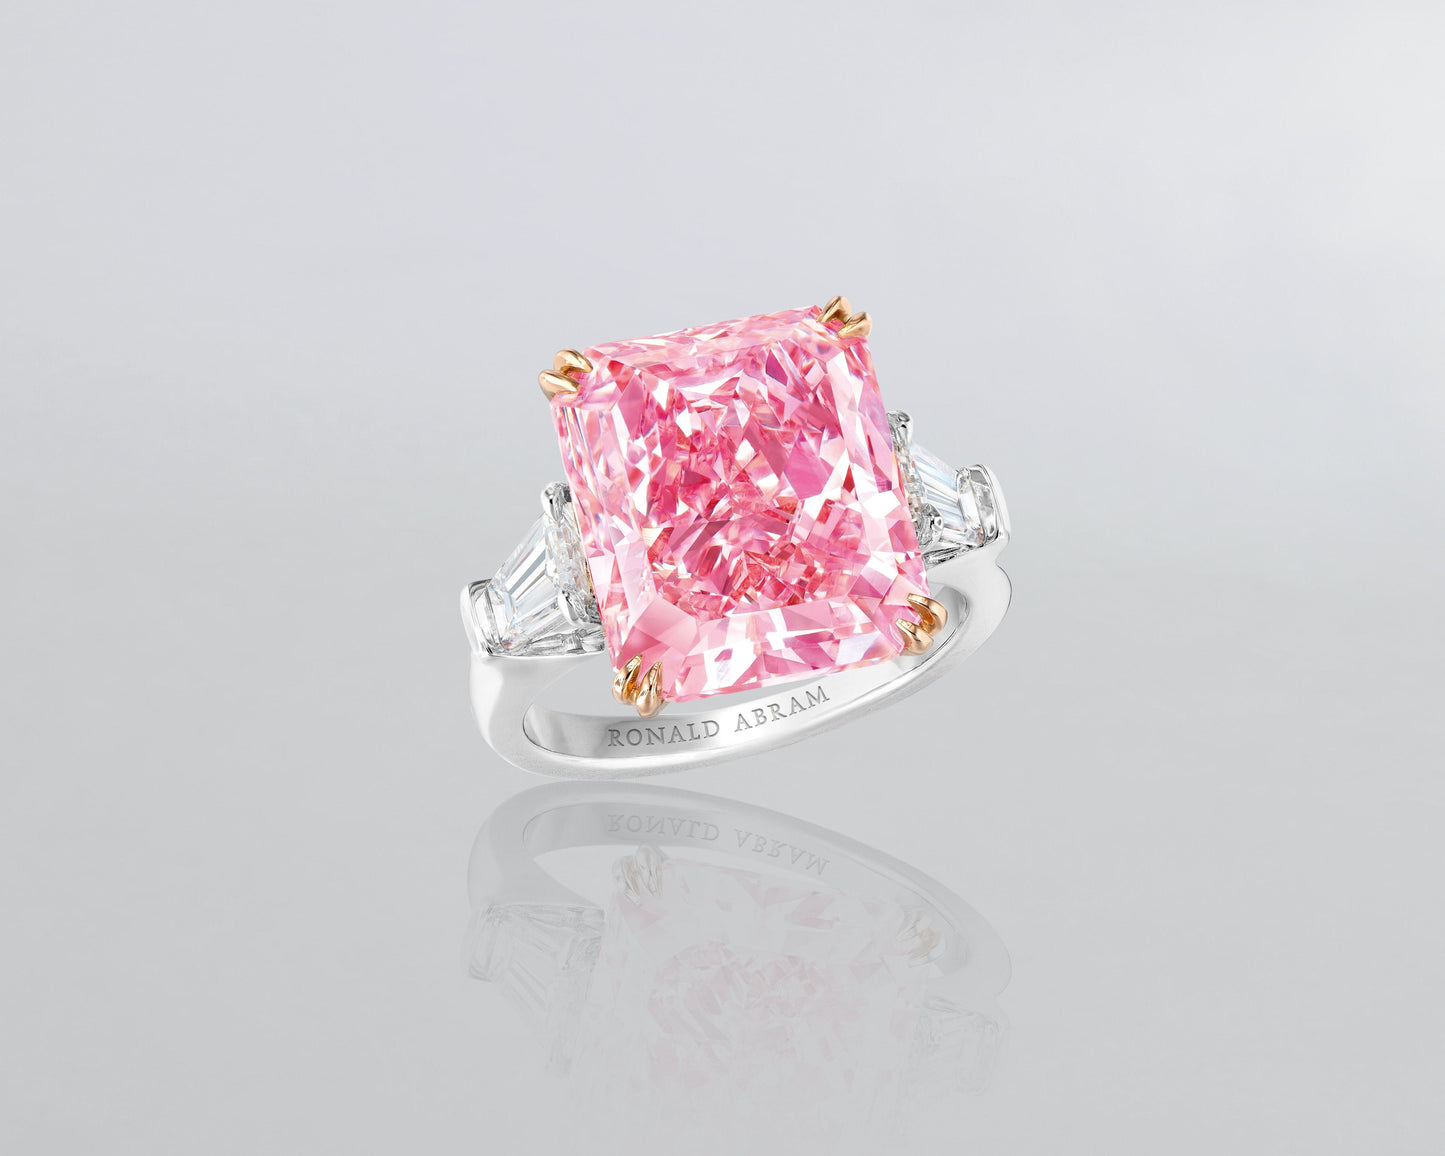 10.24 carat Radiant Cut Fancy Intense Purplish-Pink Diamond Ring